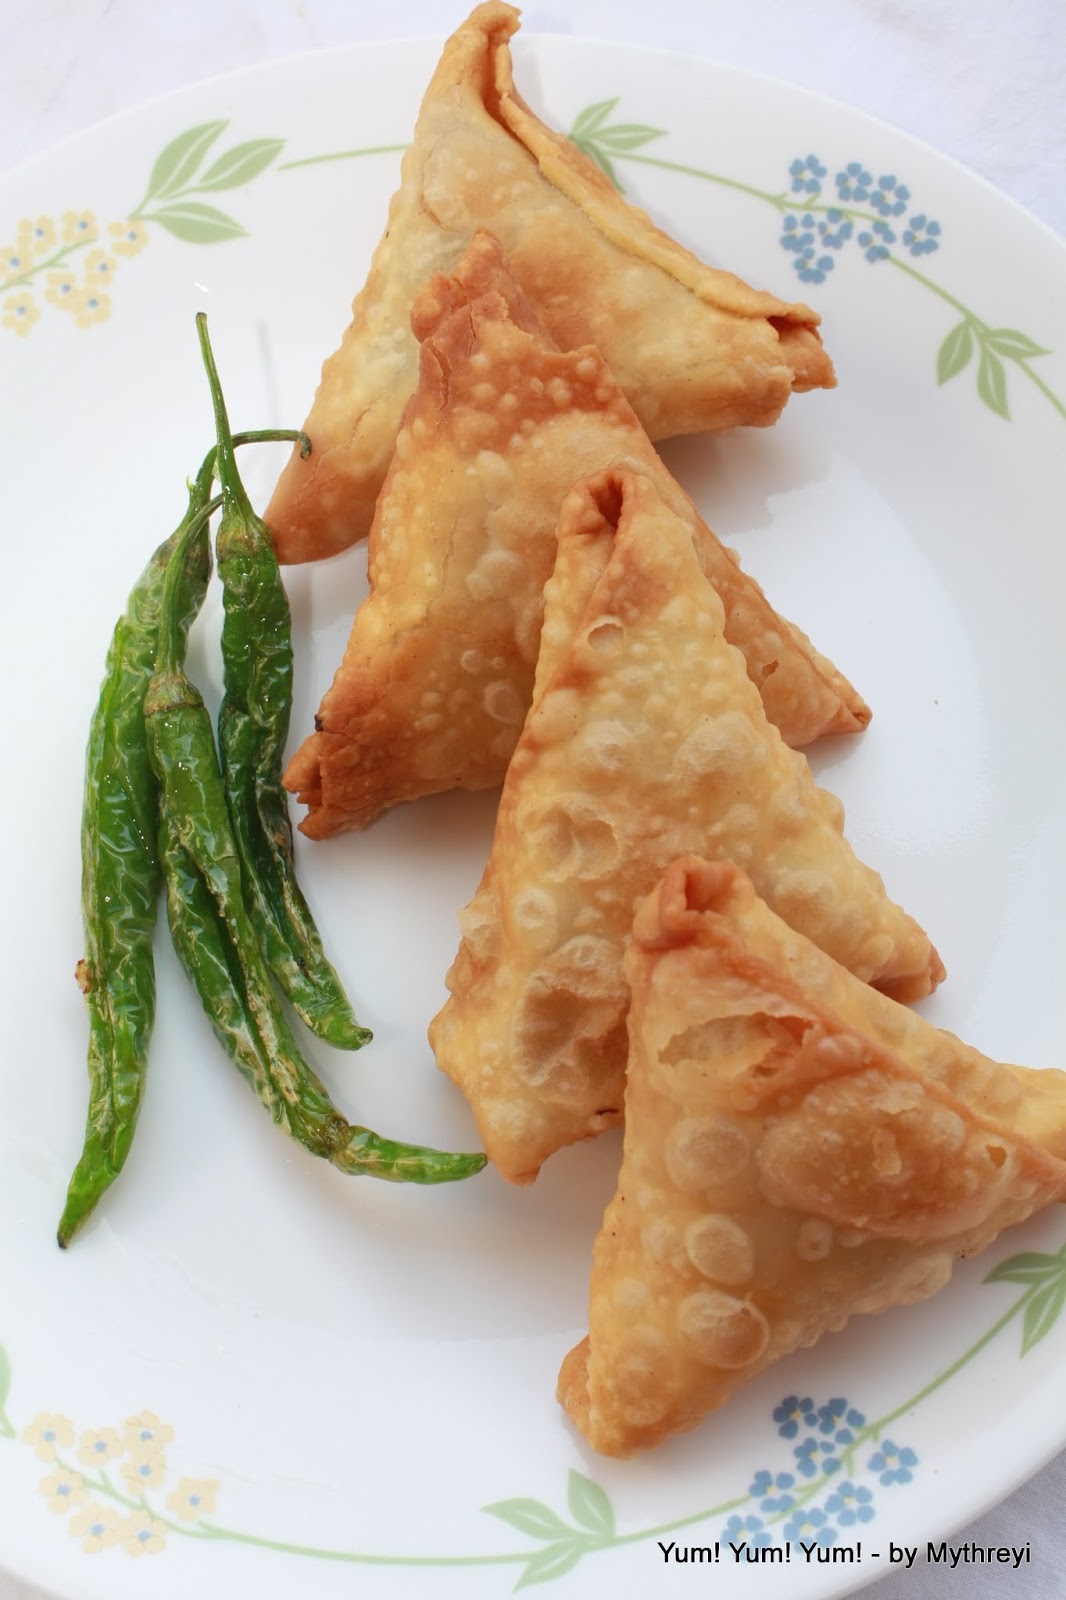 Yum! Yum! Yum!: Samosa ~ Every Indian's Favorite Snack